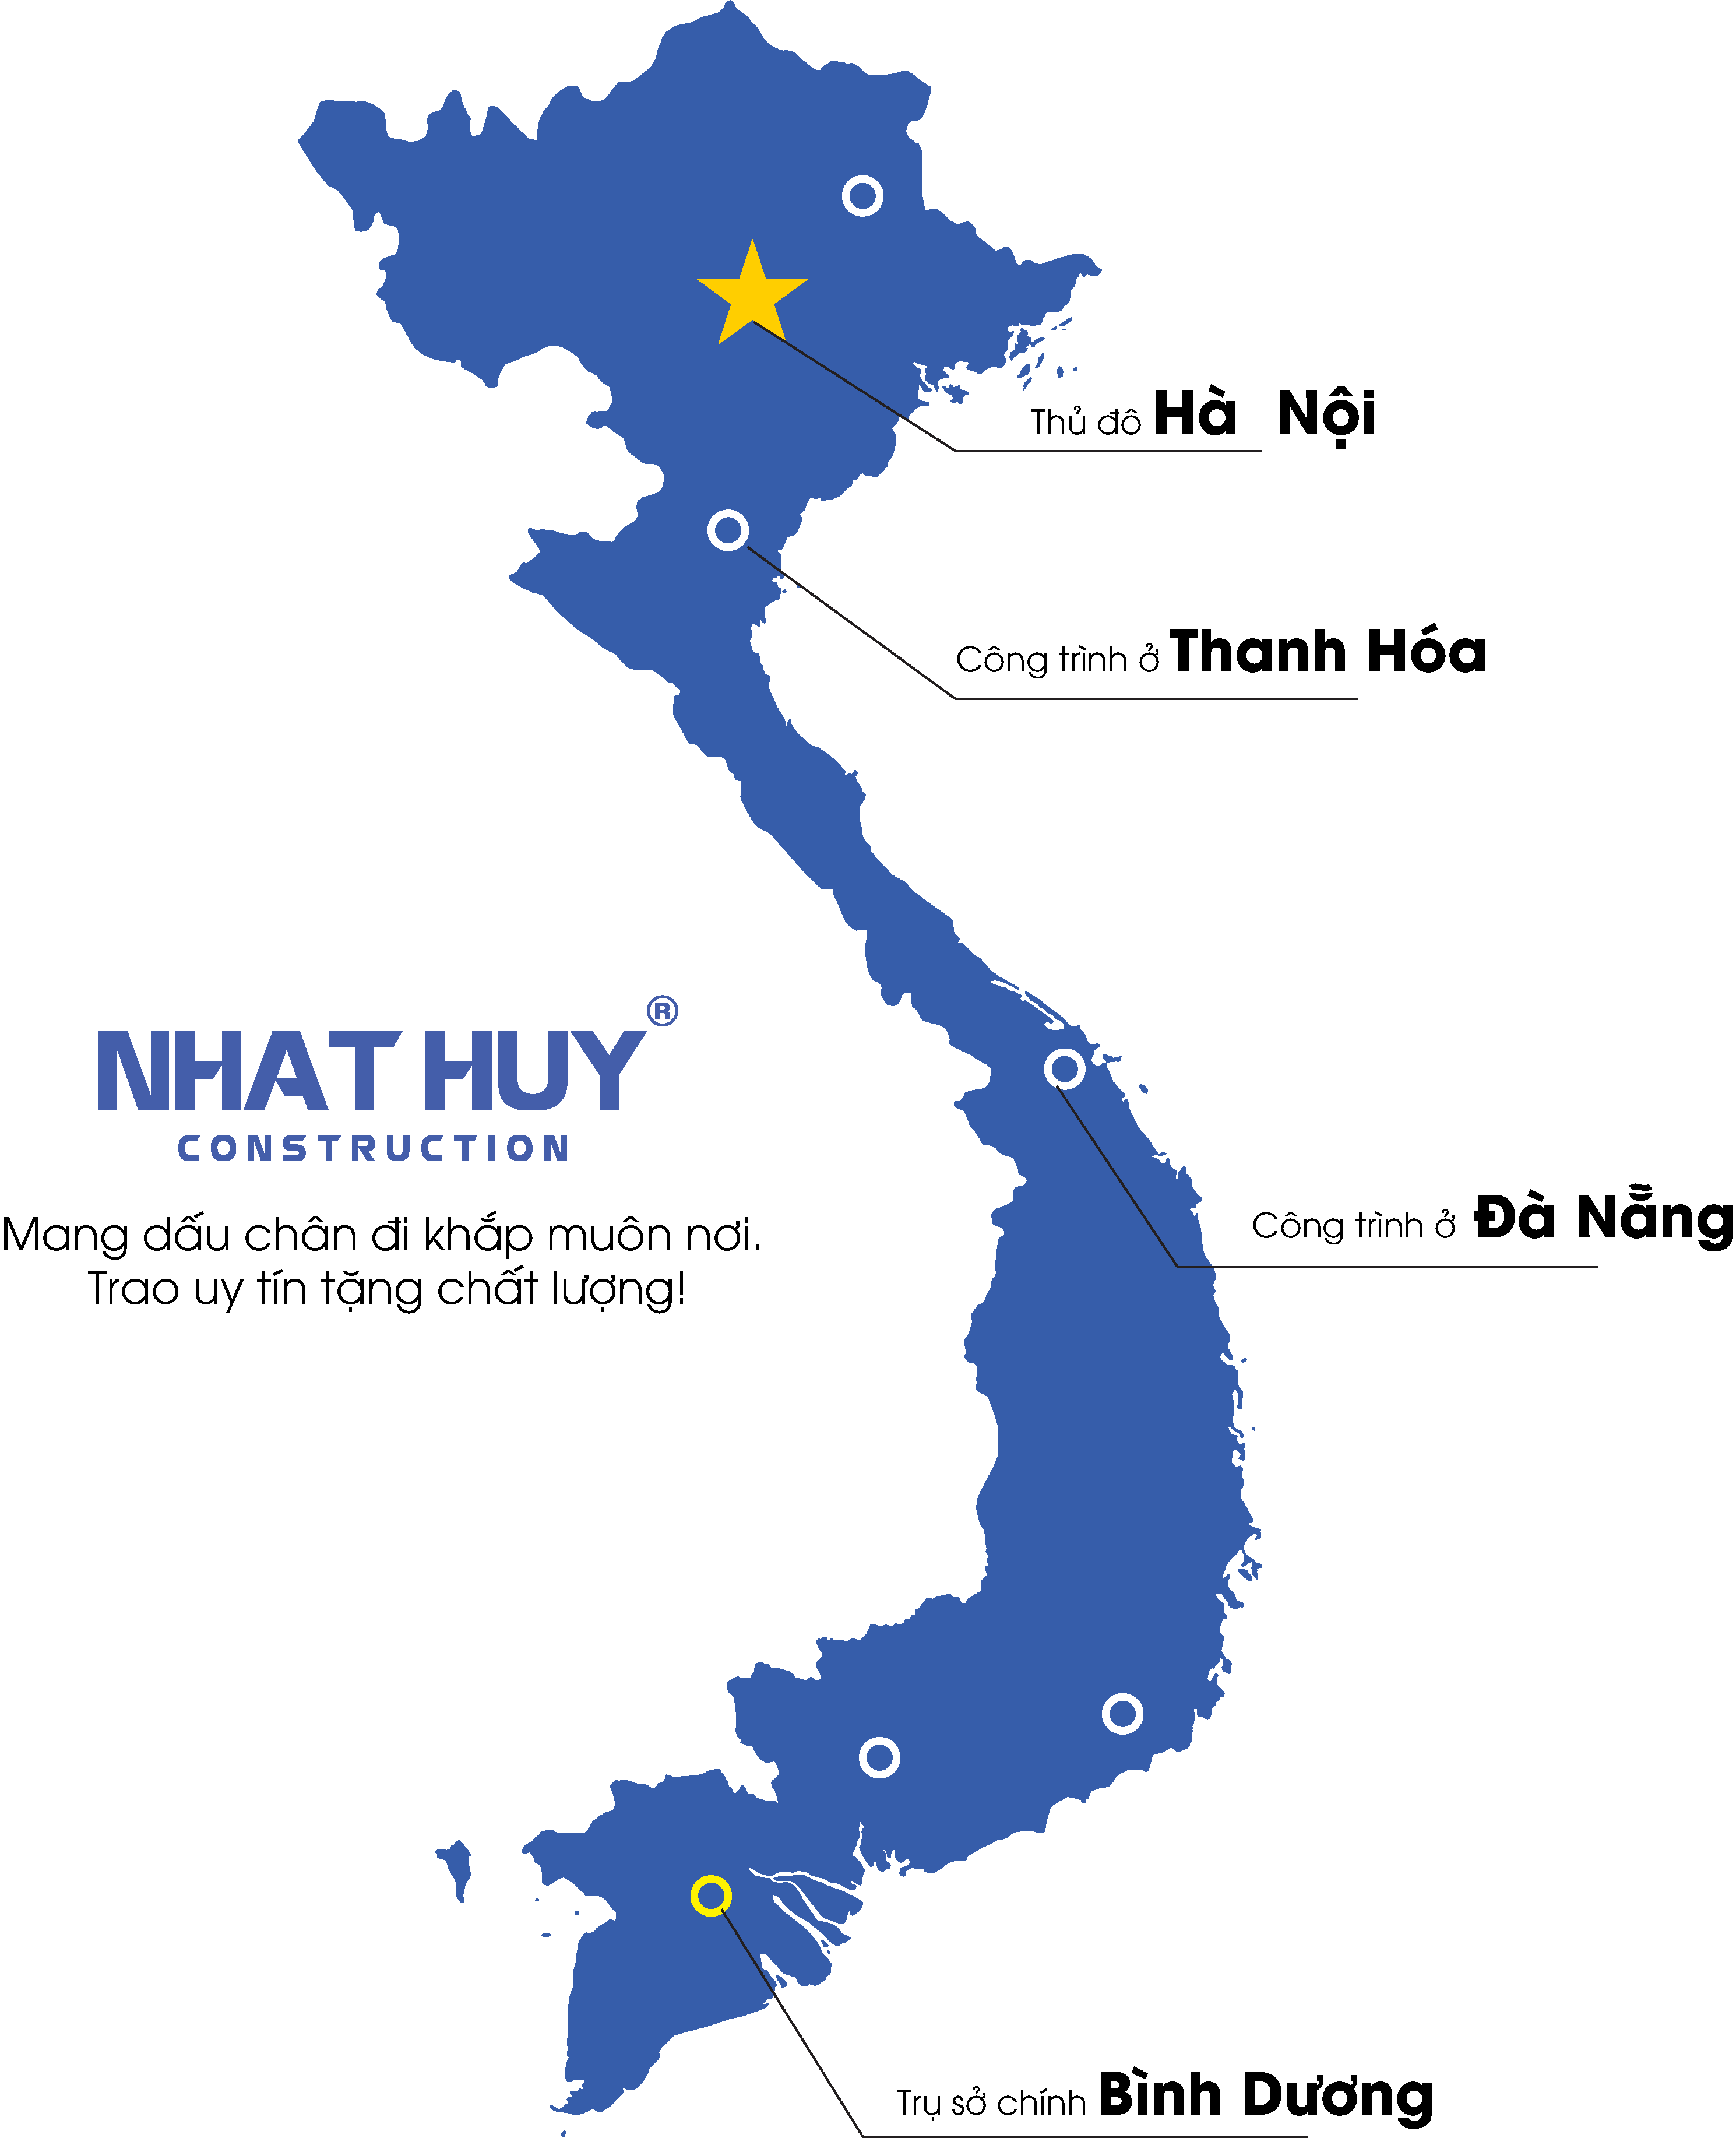 Xây lắp Nhật Huy - Bản đồ